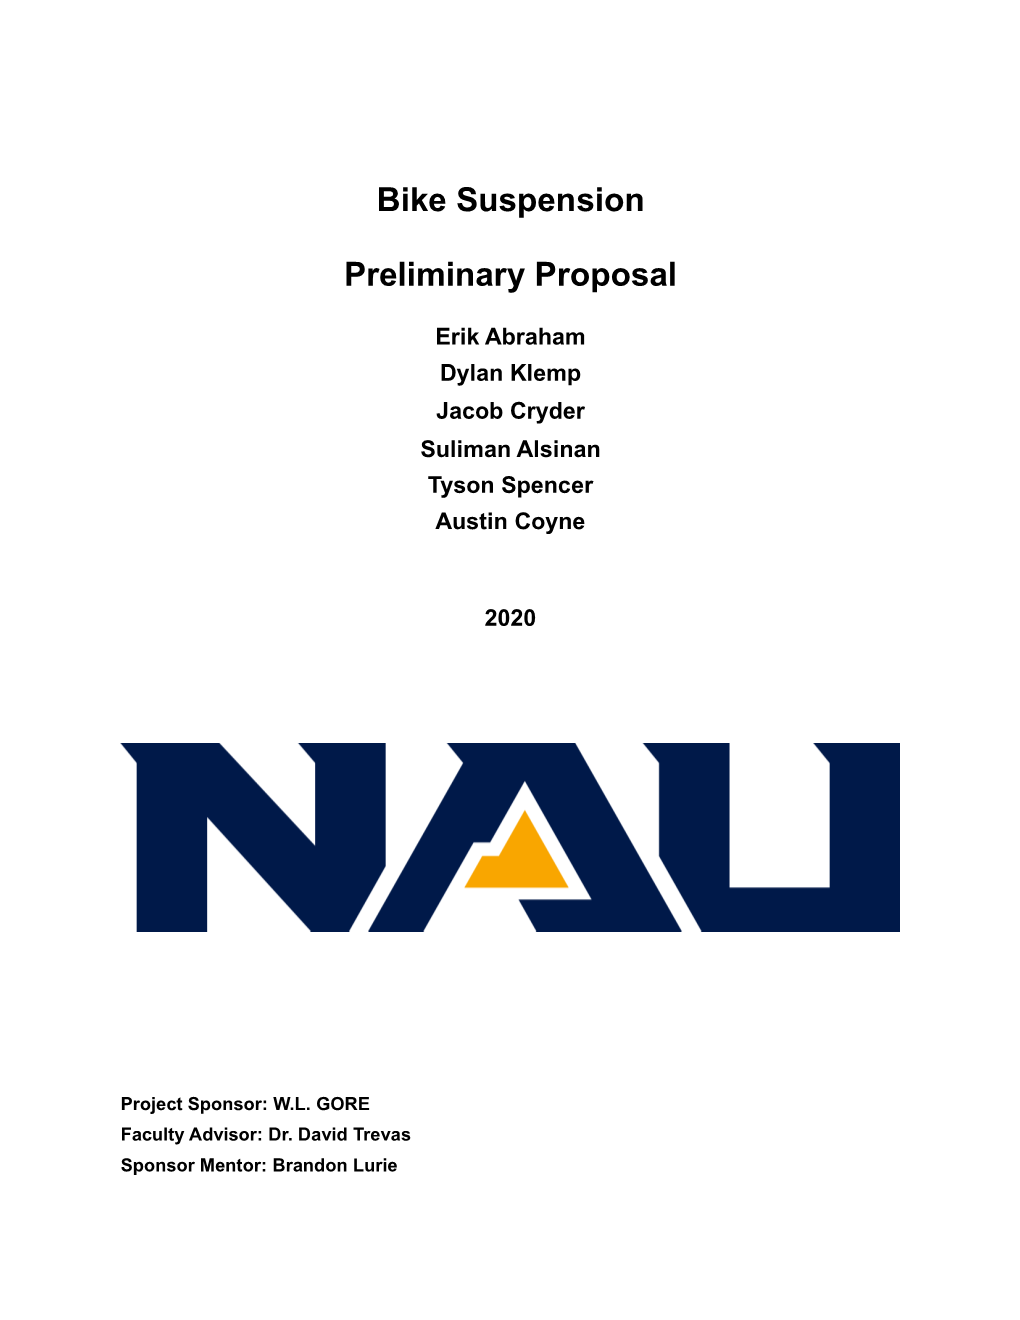 Bike Suspension Preliminary Proposal